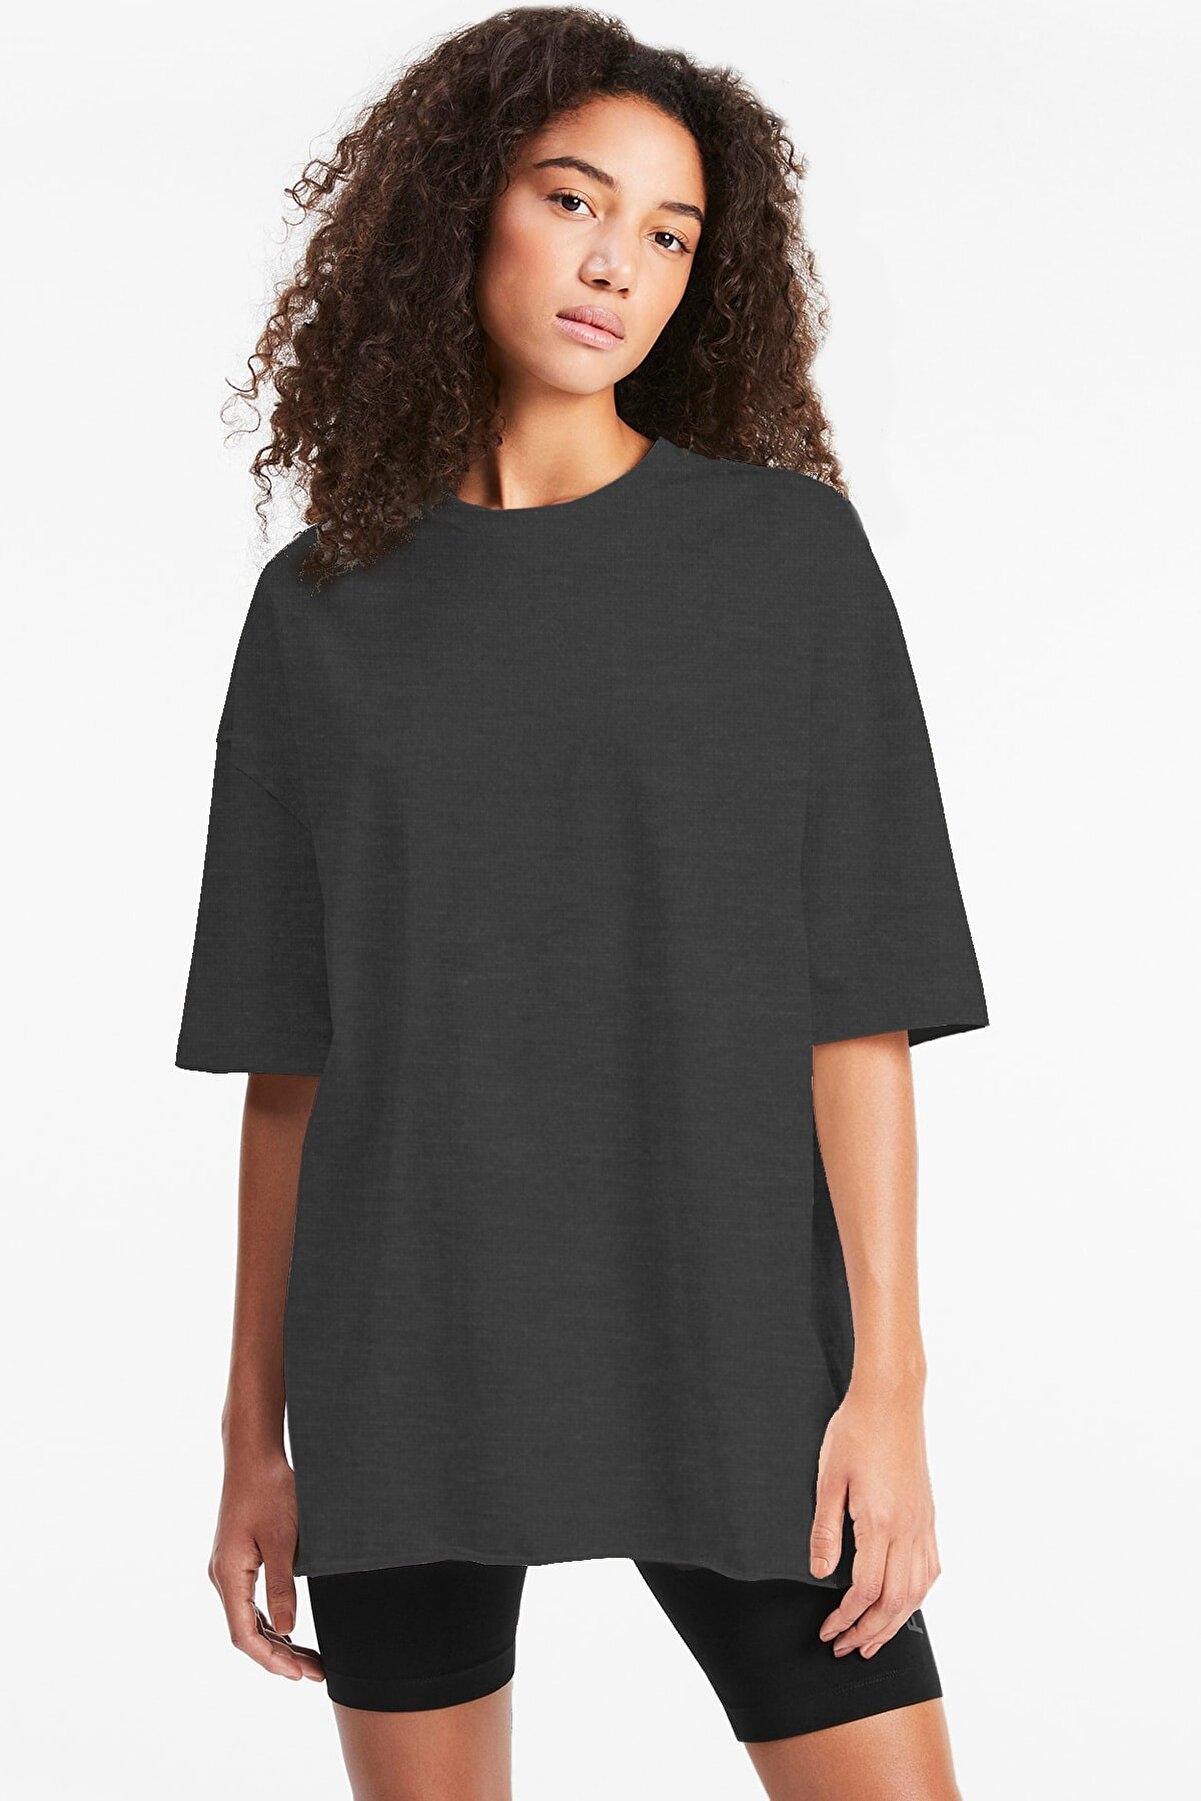 Düz, Baskısız Antrasit Oversize Kısa Kollu Kadın T-shirt